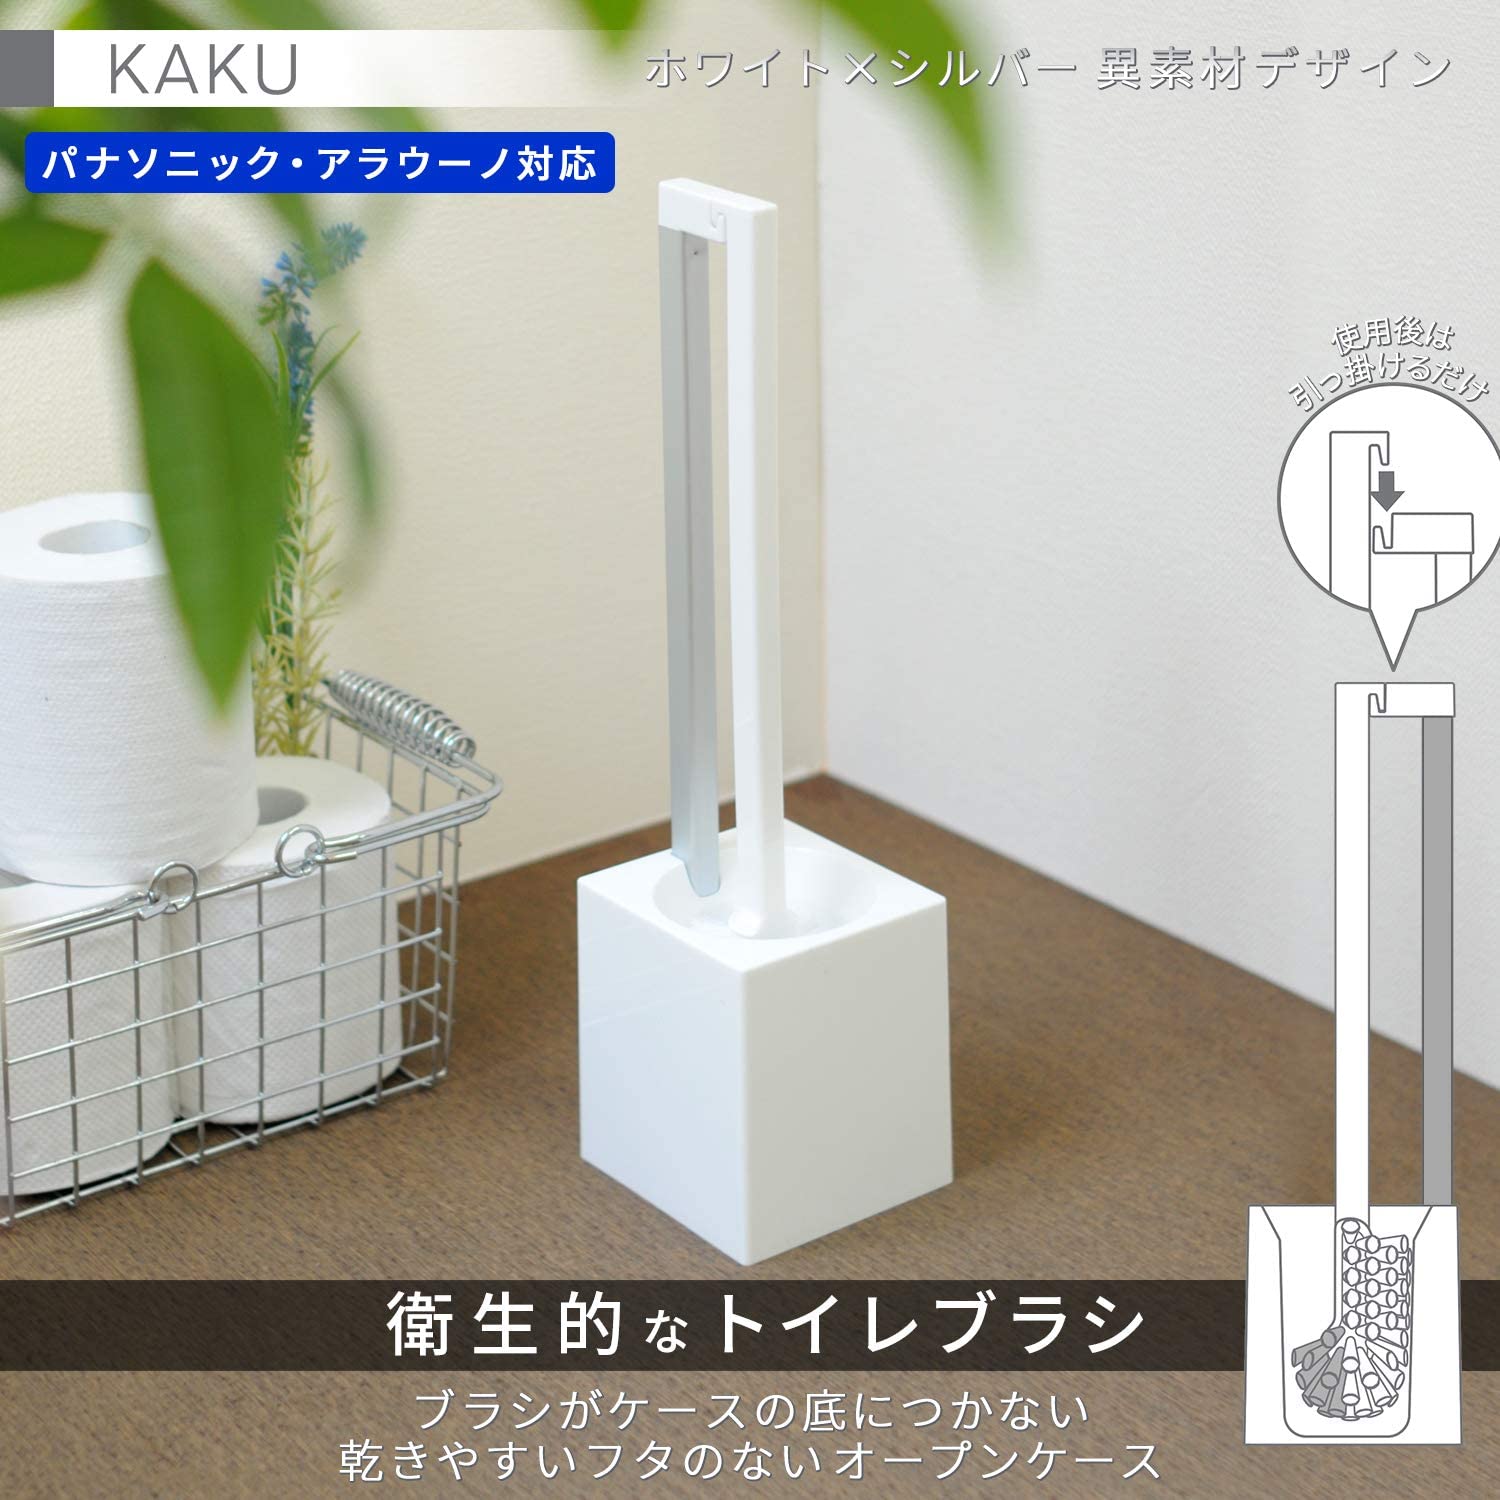 LEC(レック) KAKU トイレブラシの商品画像3 